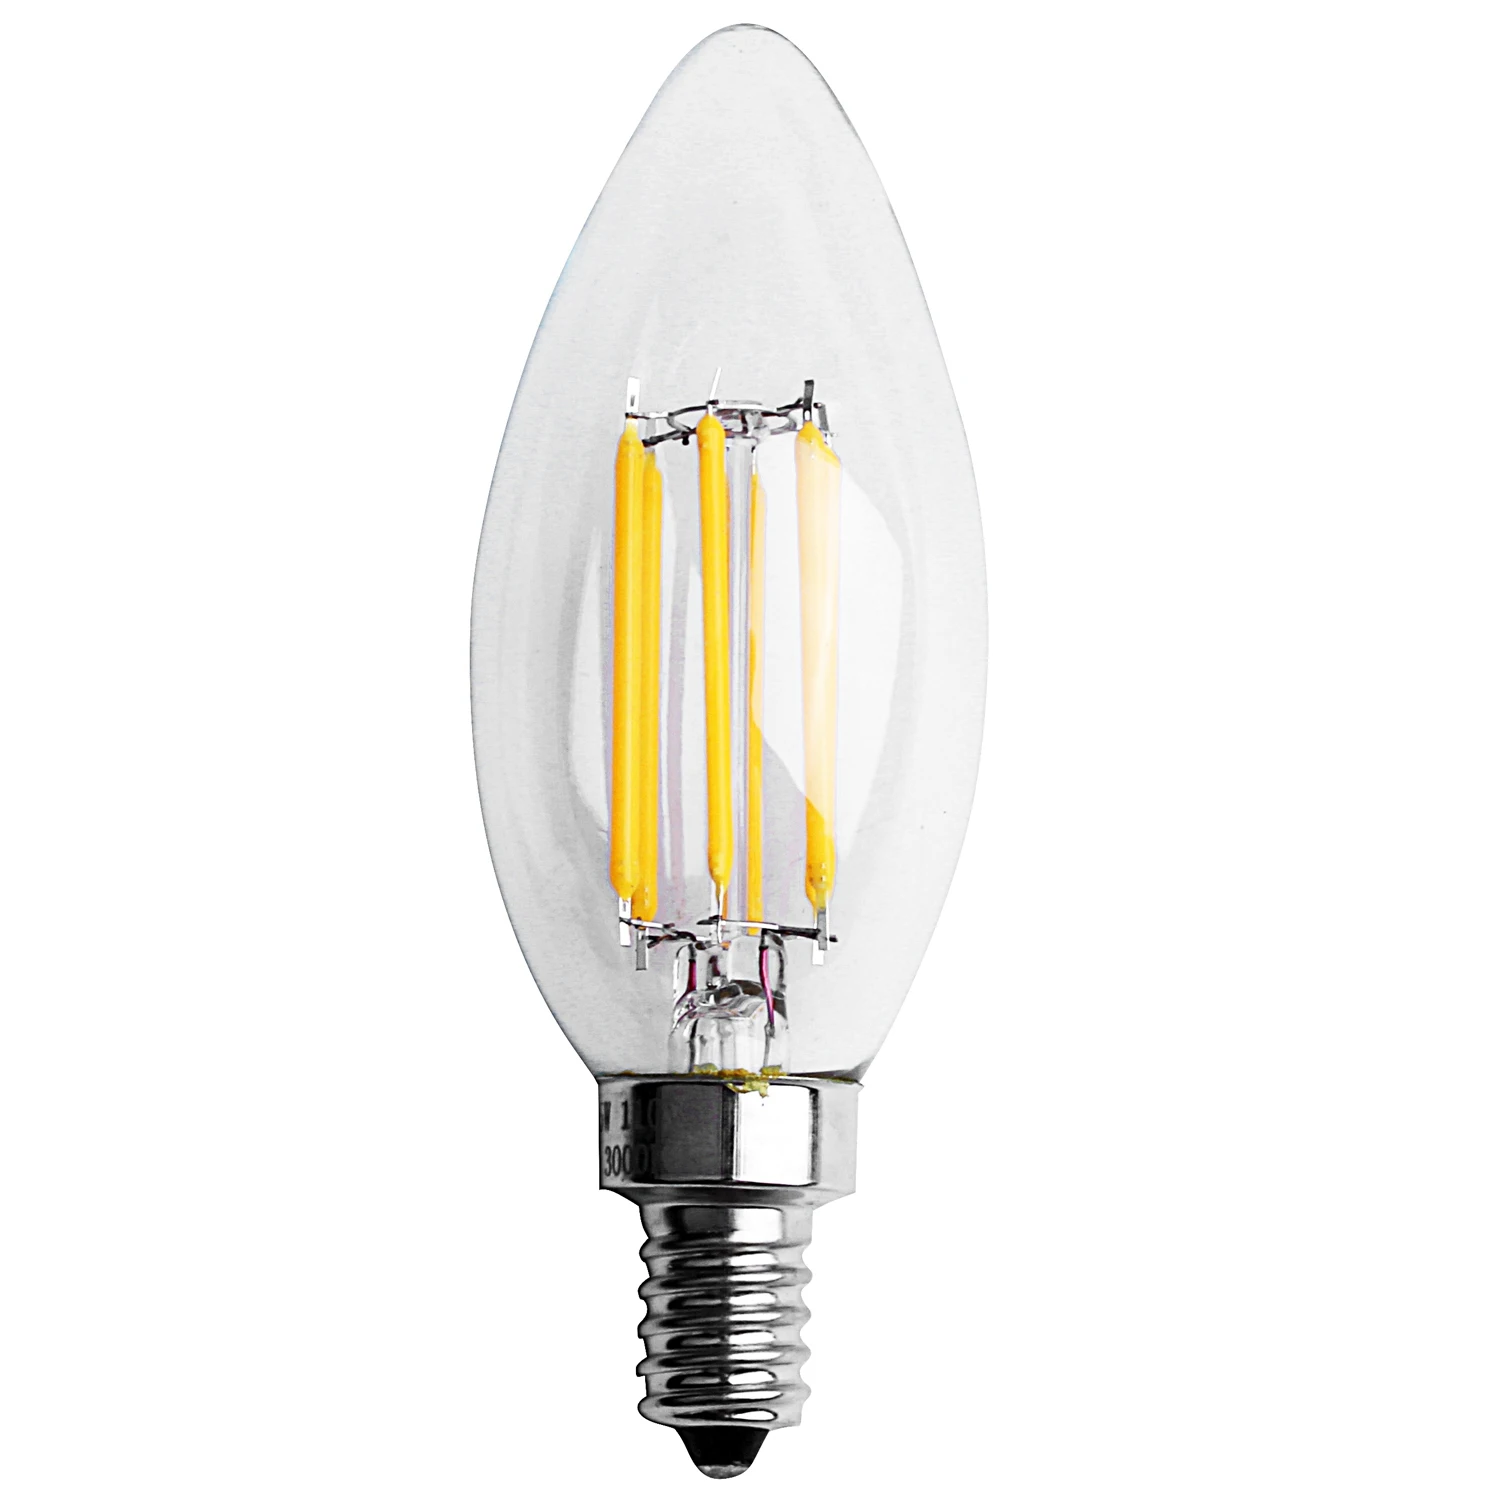 

Диммируемая лампа Эдисона E12 6 Вт COB, лампа с лампочкой 10*3,5 см